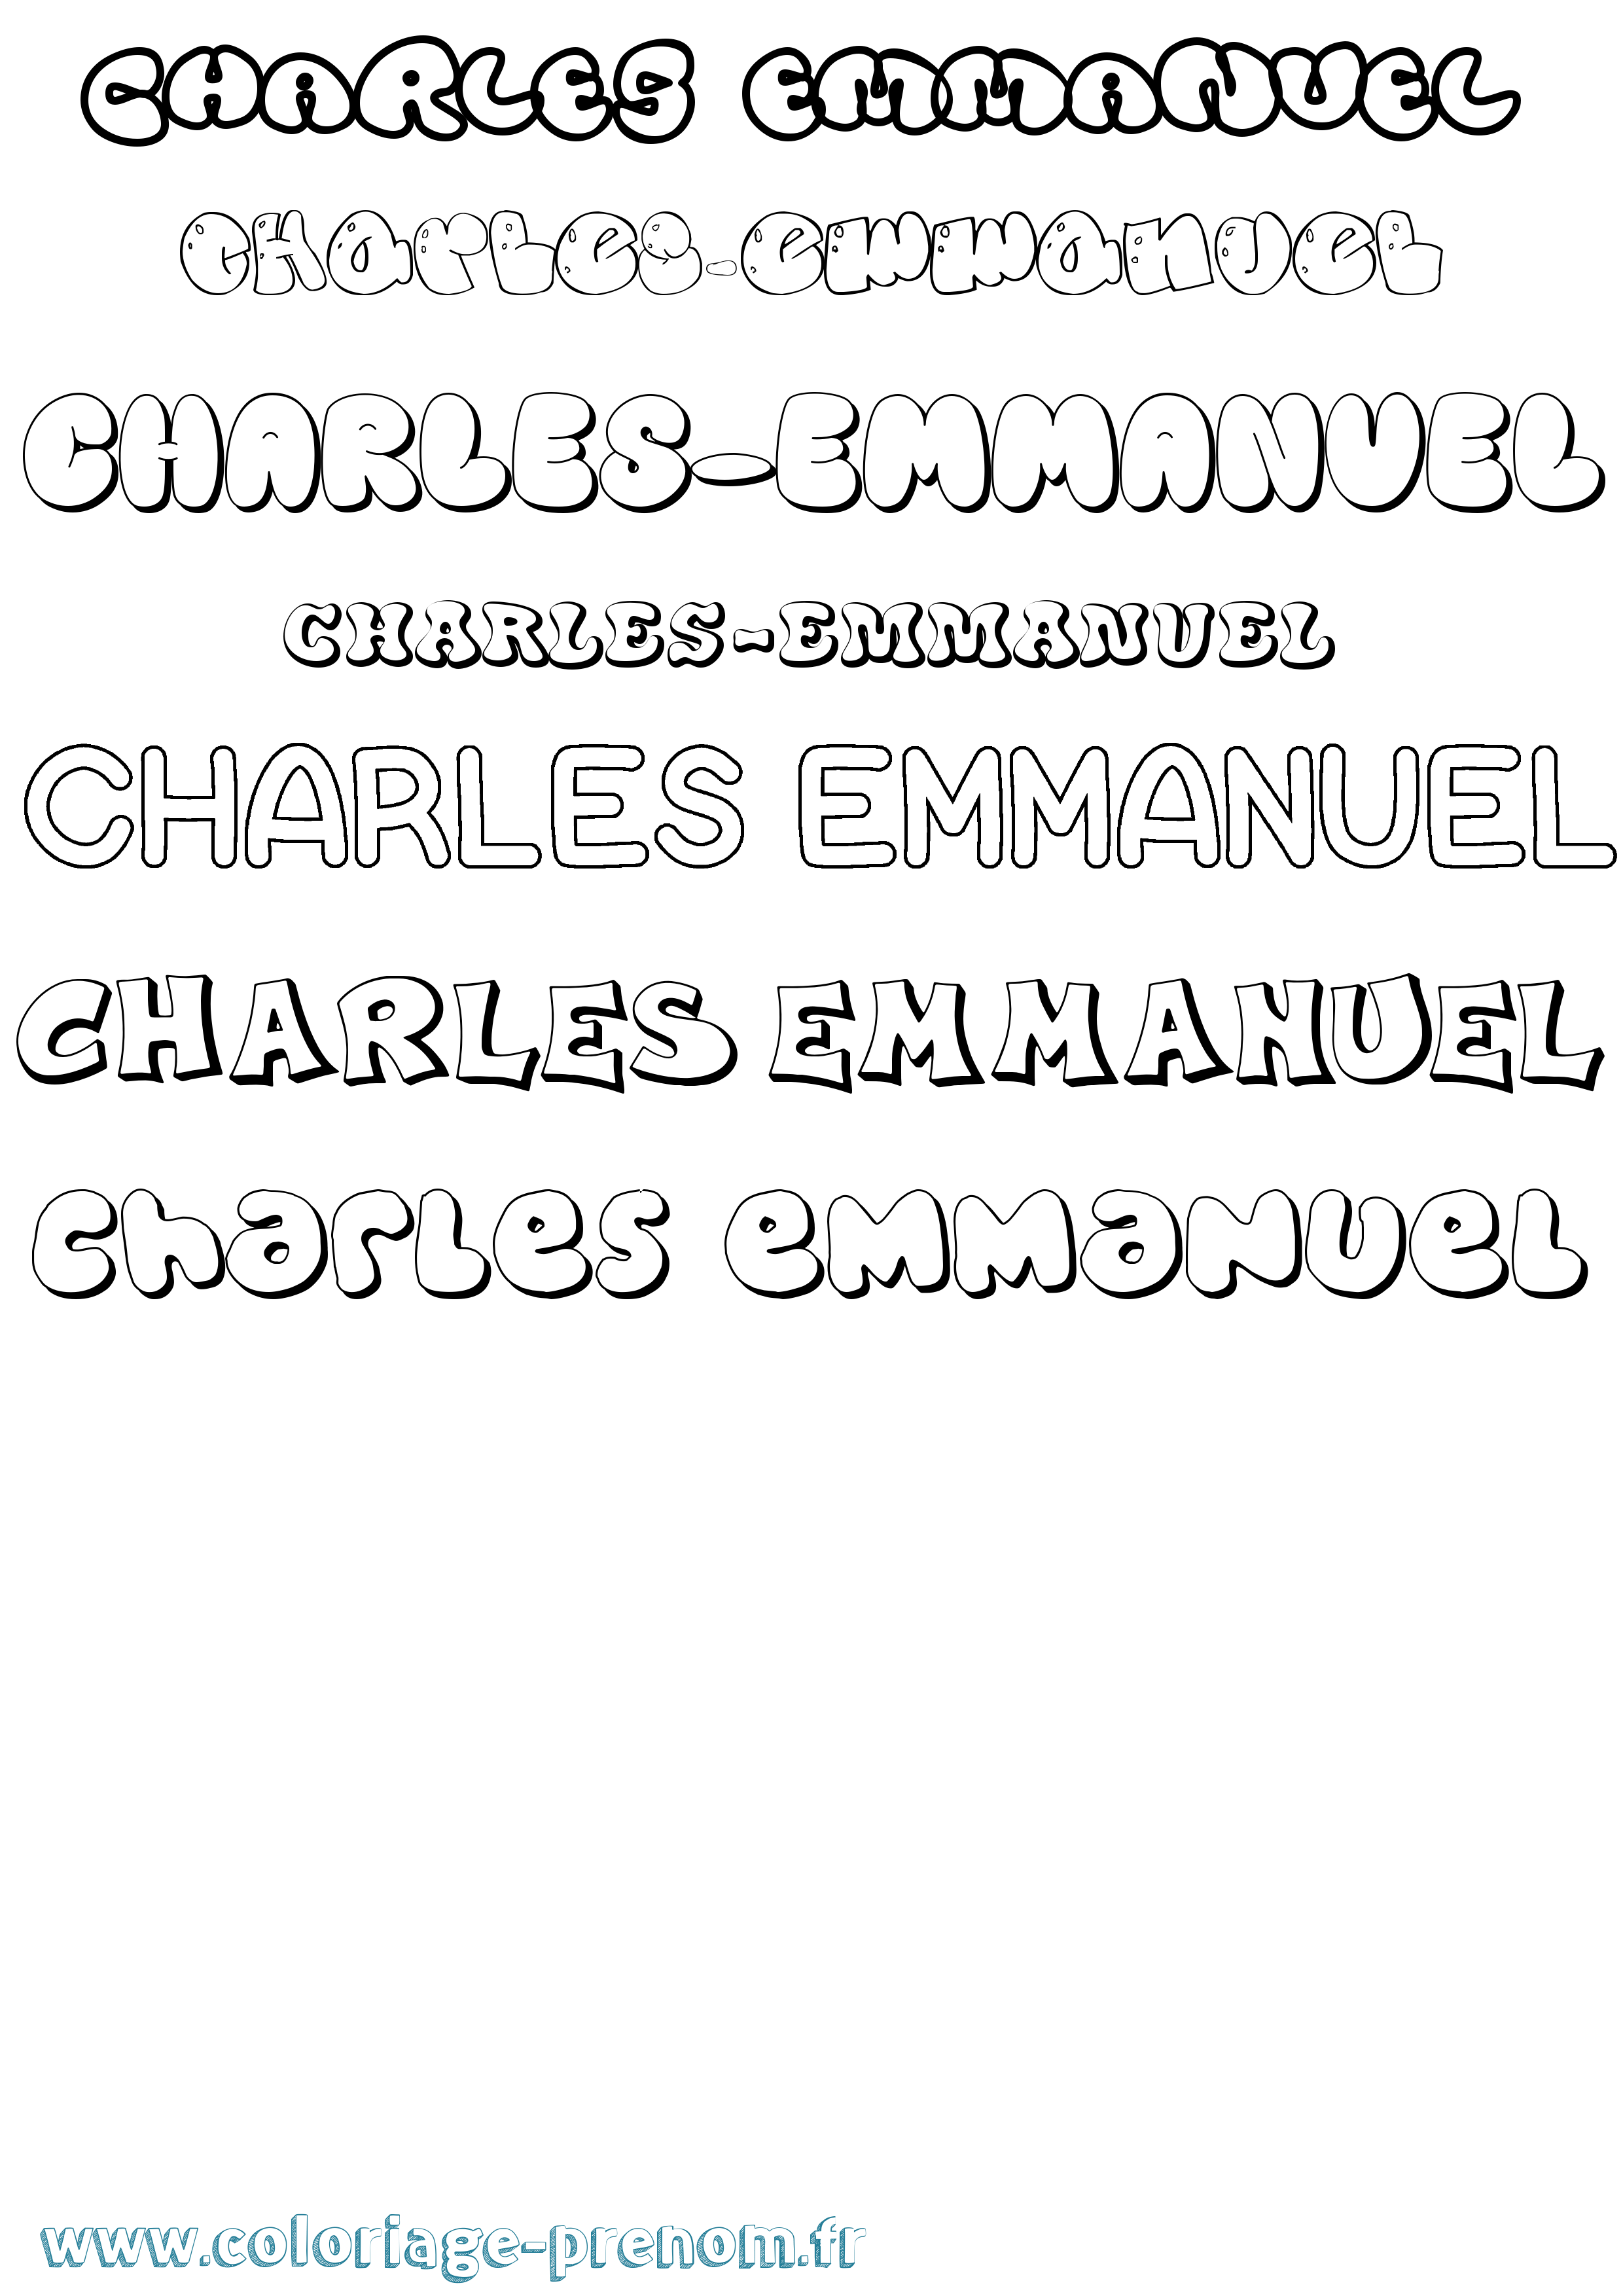 Coloriage prénom Charles-Emmanuel Bubble